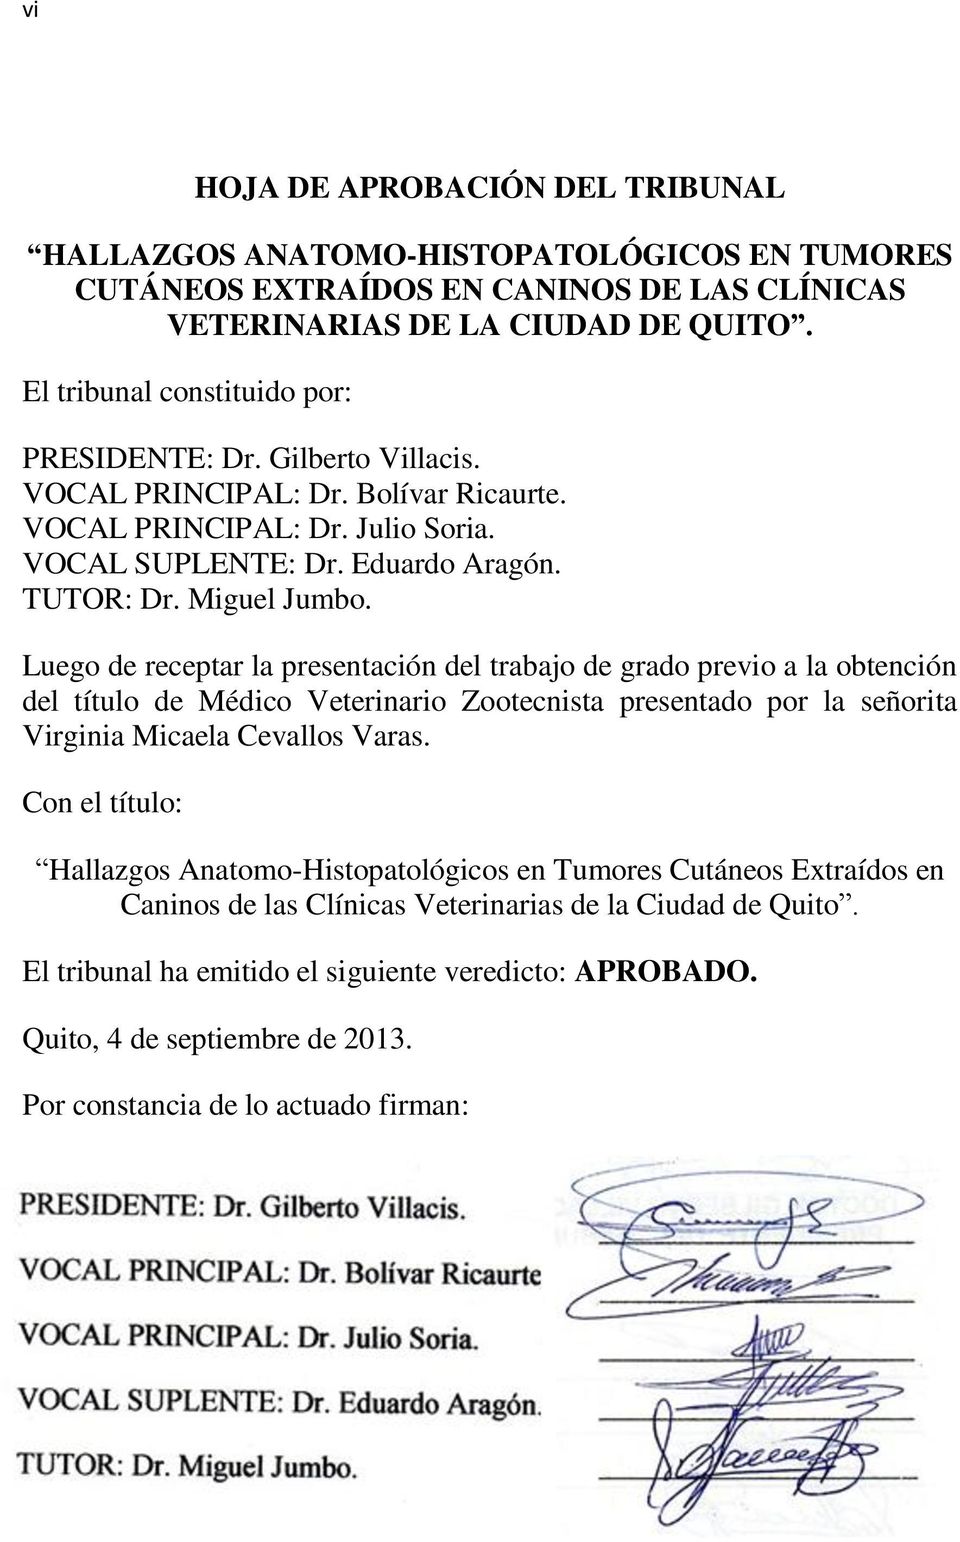 Luego de receptar la presentación del trabajo de grado previo a la obtención del título de Médico Veterinario Zootecnista presentado por la señorita Virginia Micaela Cevallos Varas.